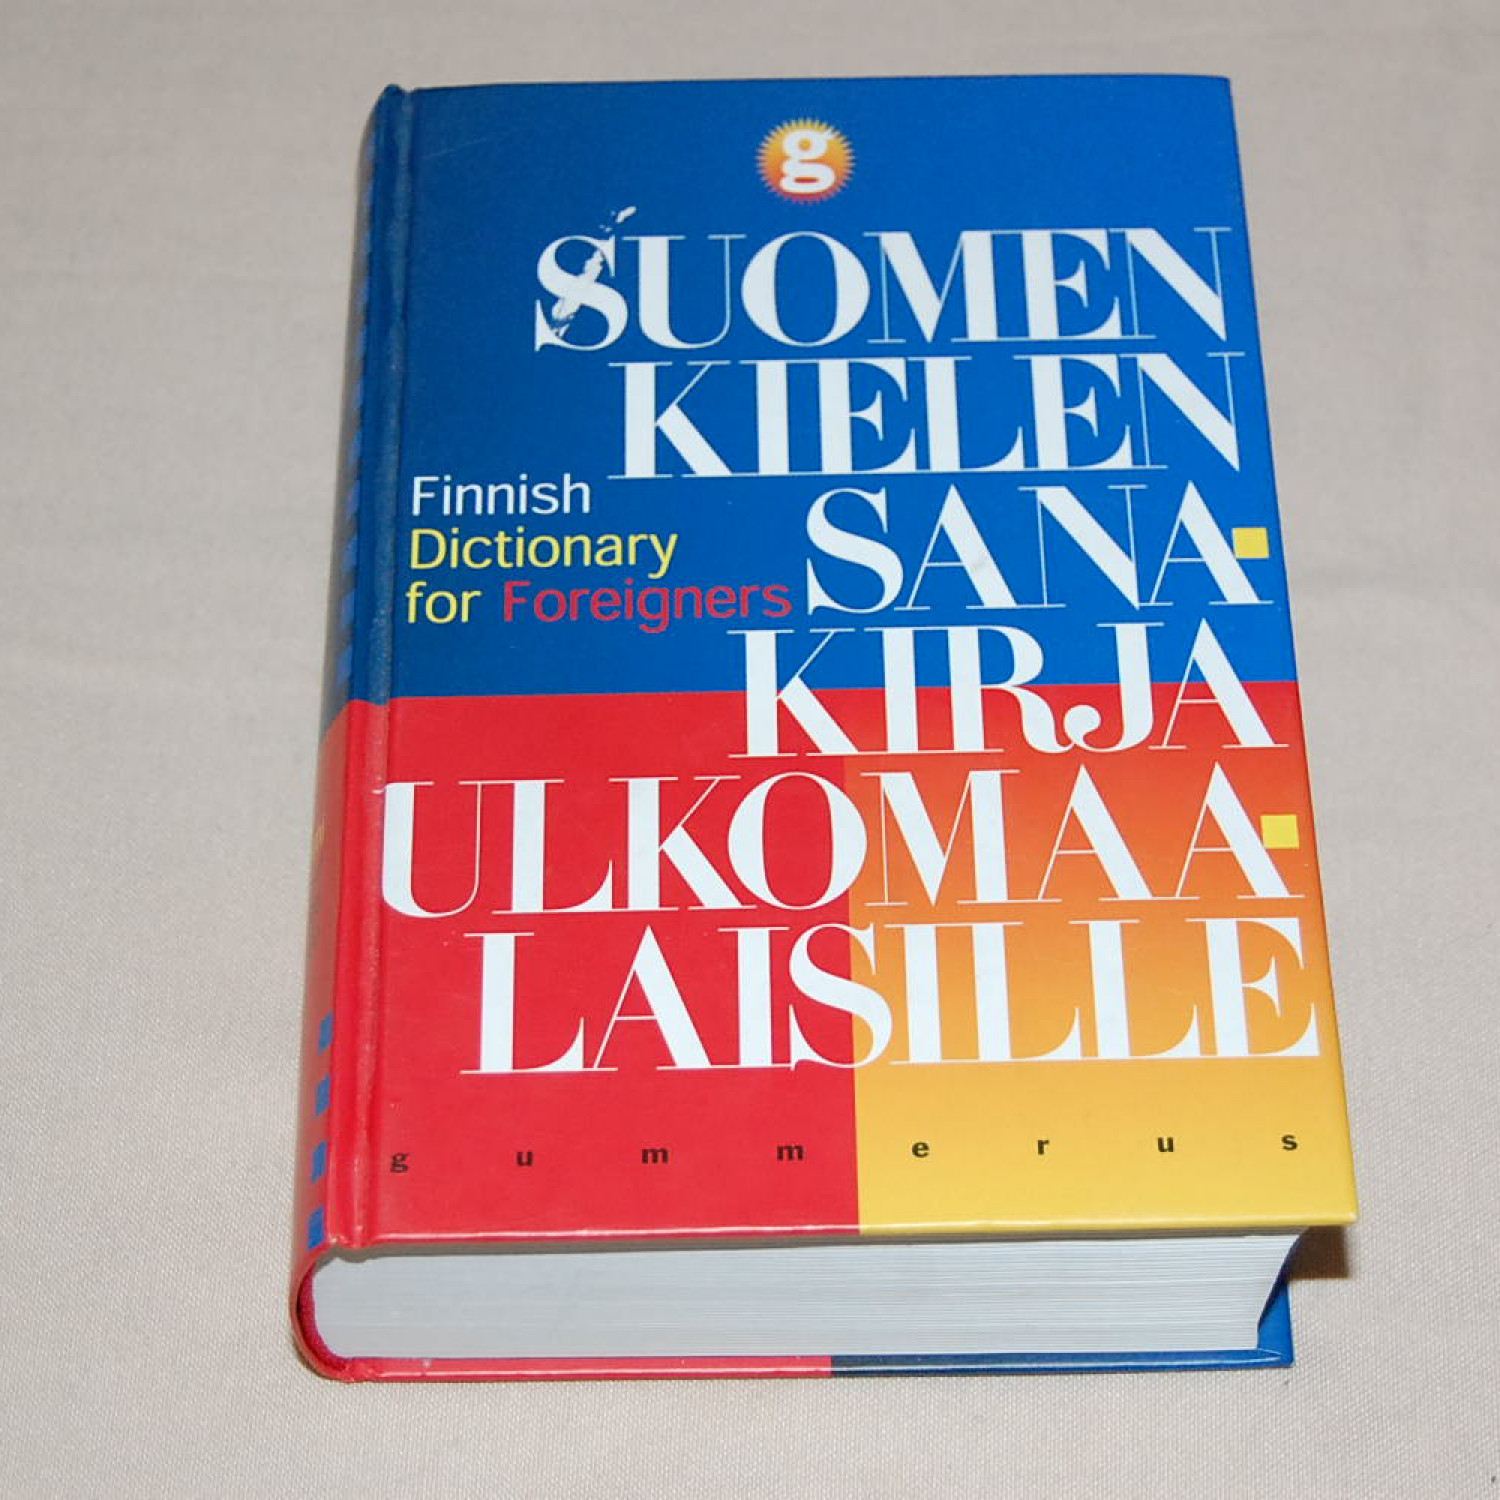 Suomen kielen sankirja ulkomaalaisille - Finnish Dictionary for Foreigners